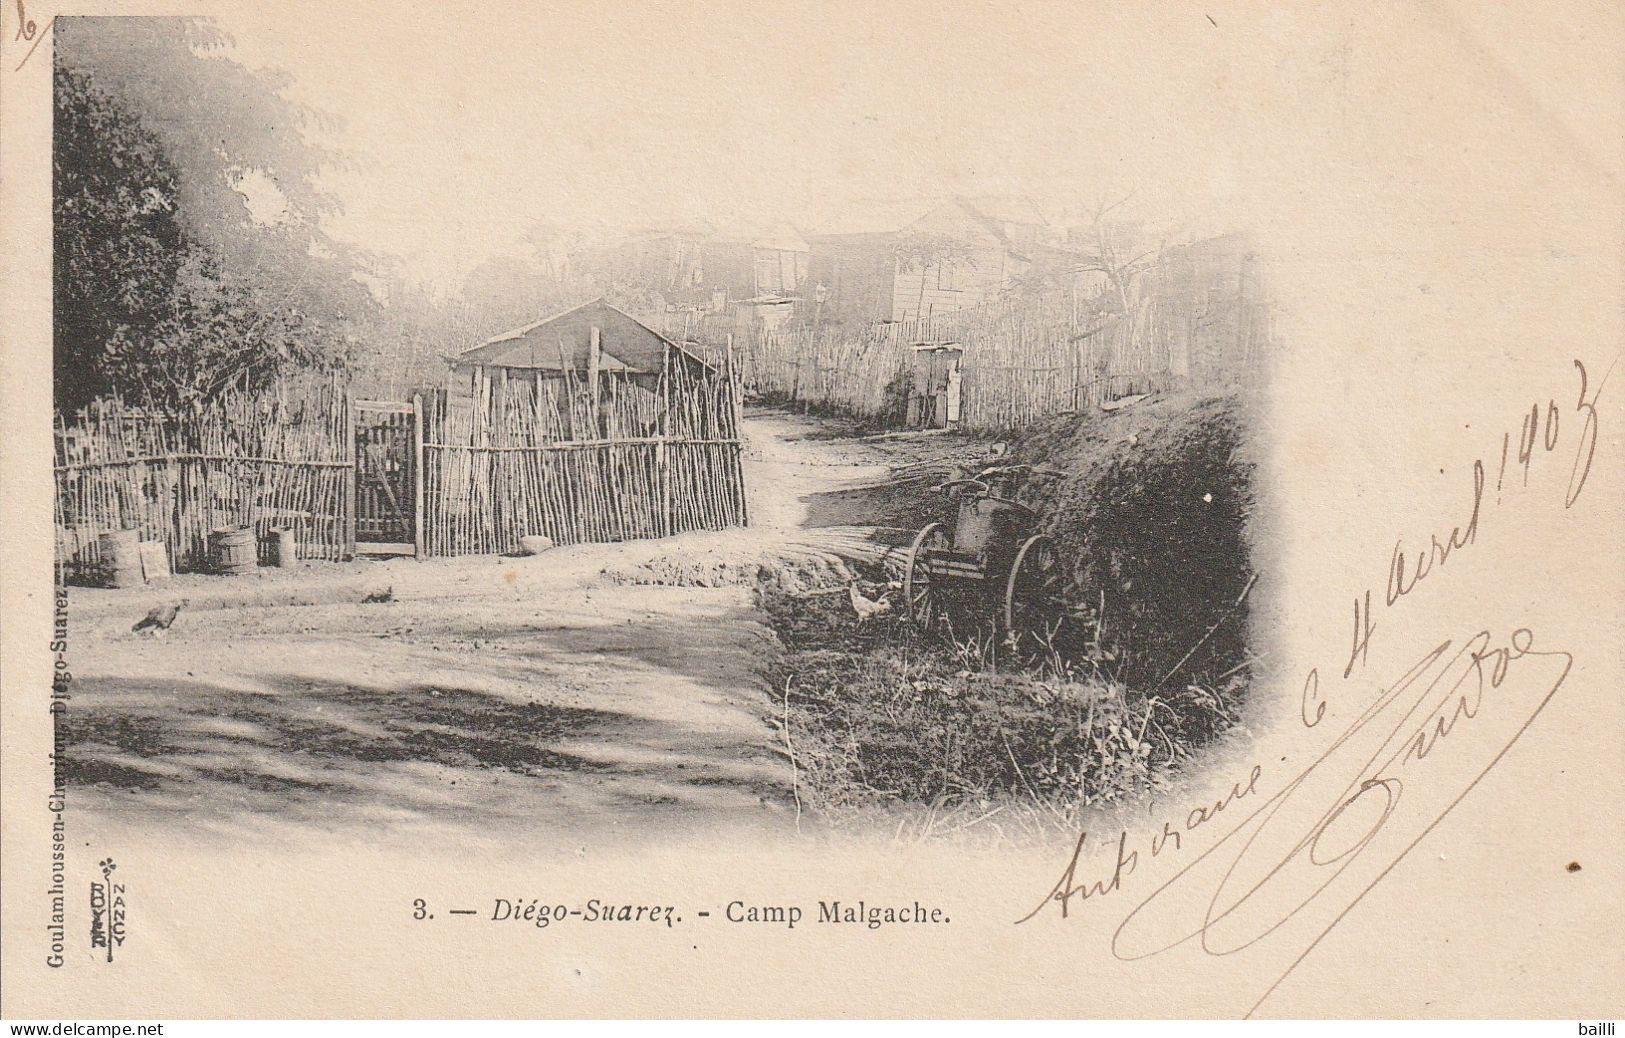 Madagascar Carte Postale Diégo Suarez Pour La France 1903 - Lettres & Documents